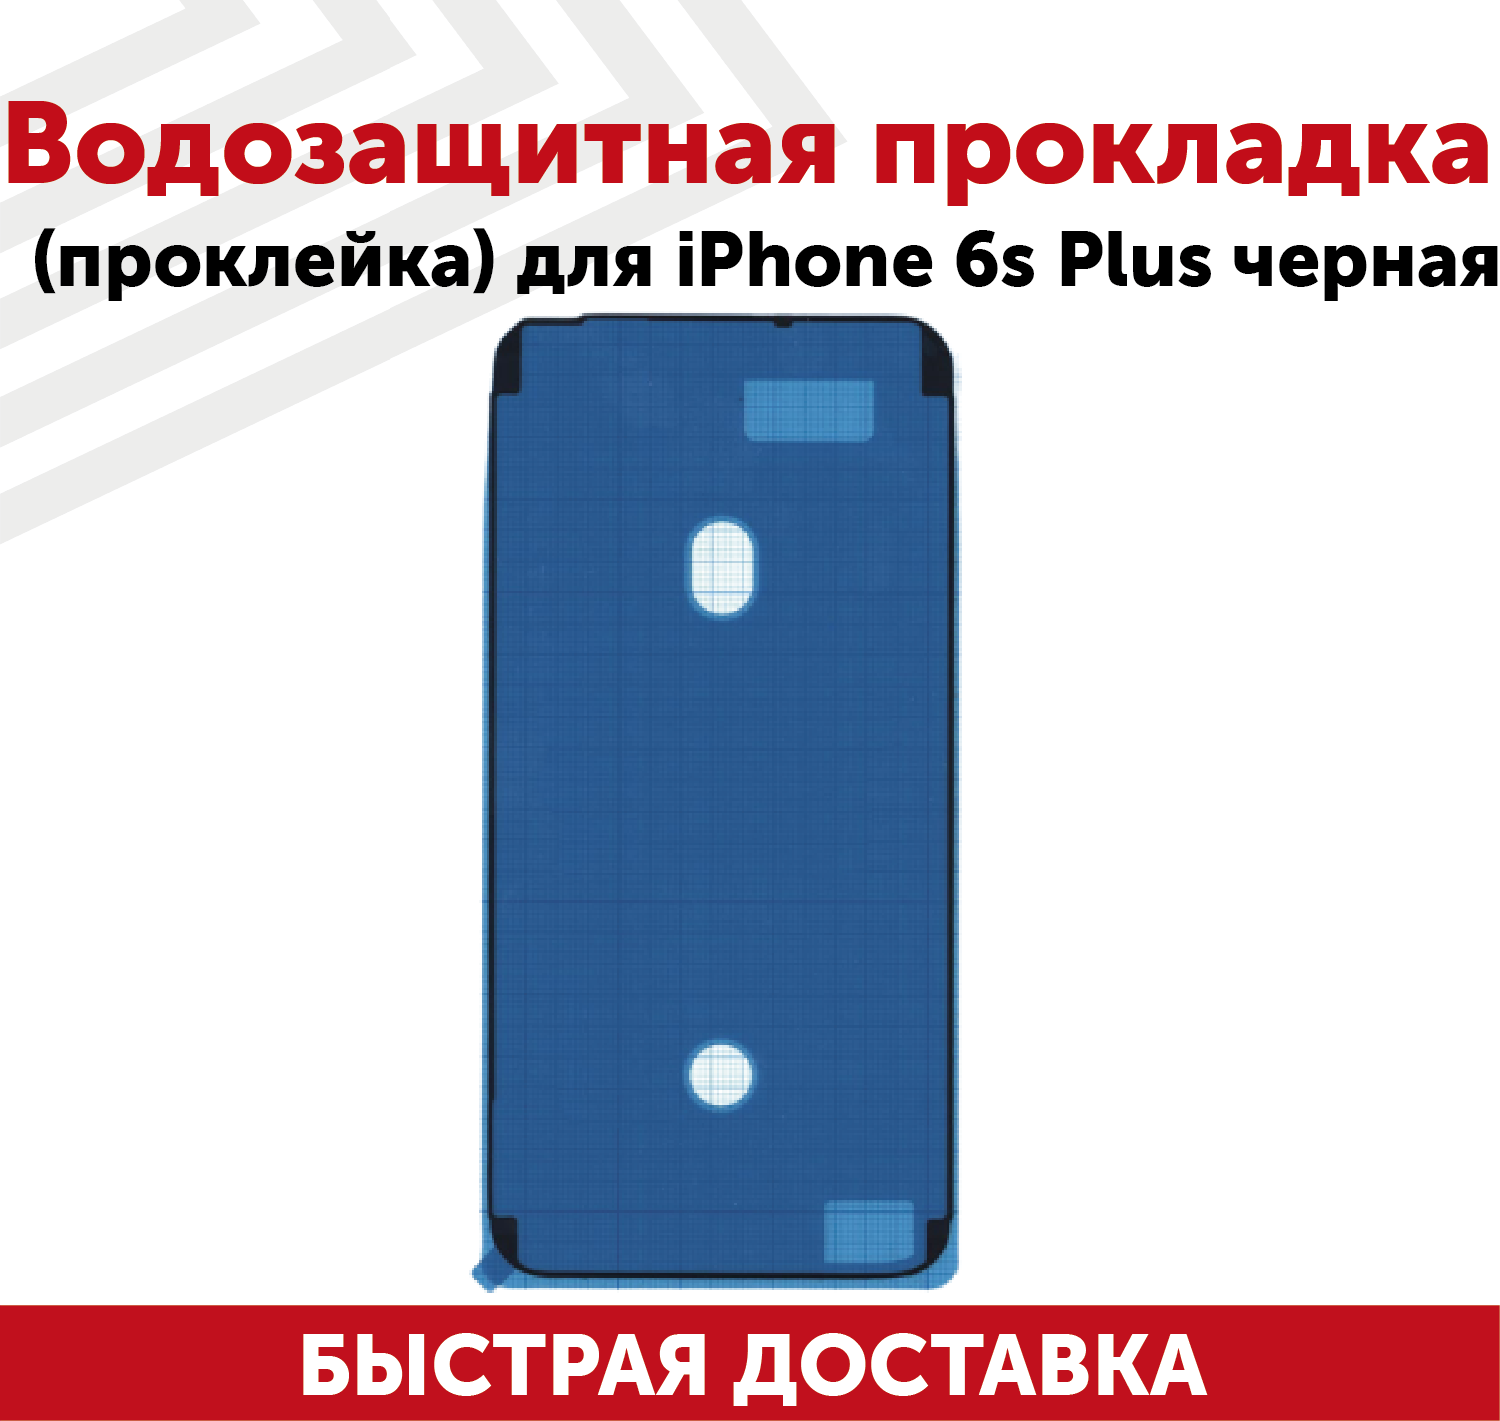 Водозащитная прокладка (проклейка, скотч) для мобильного телефона (смартфона) Apple iPhone 6S Plus, черная